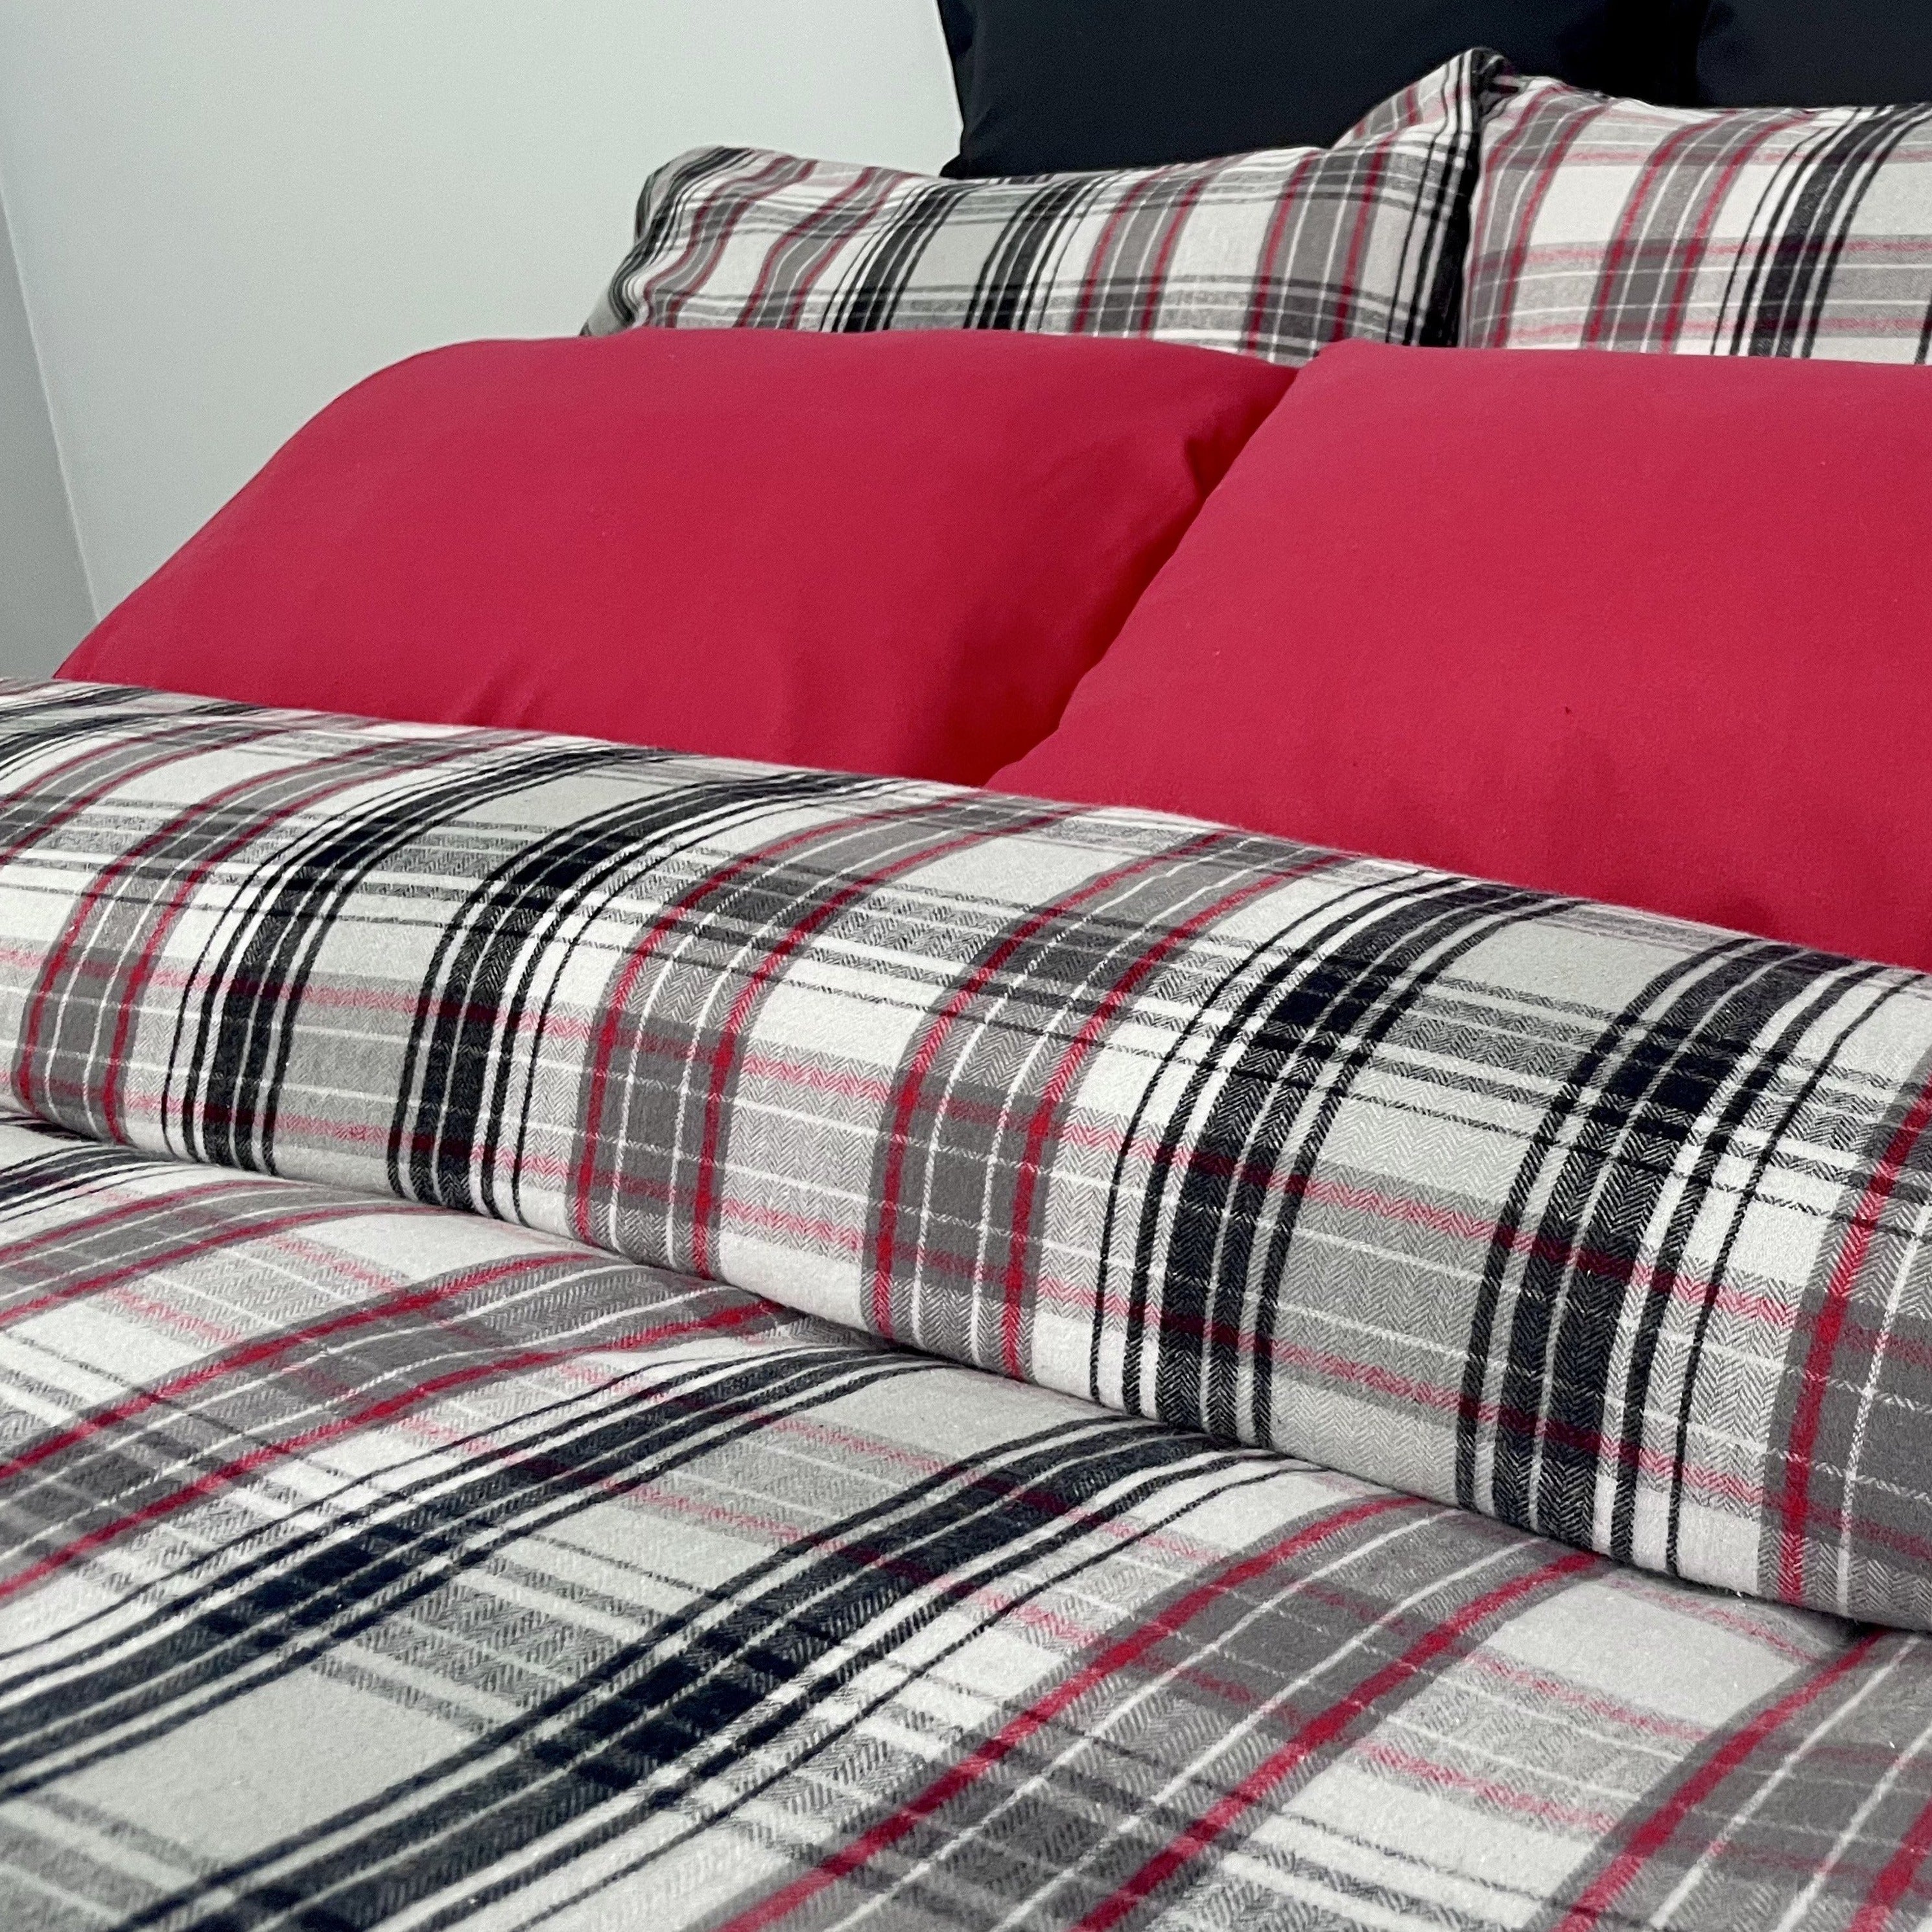 Spencer Bed Linens